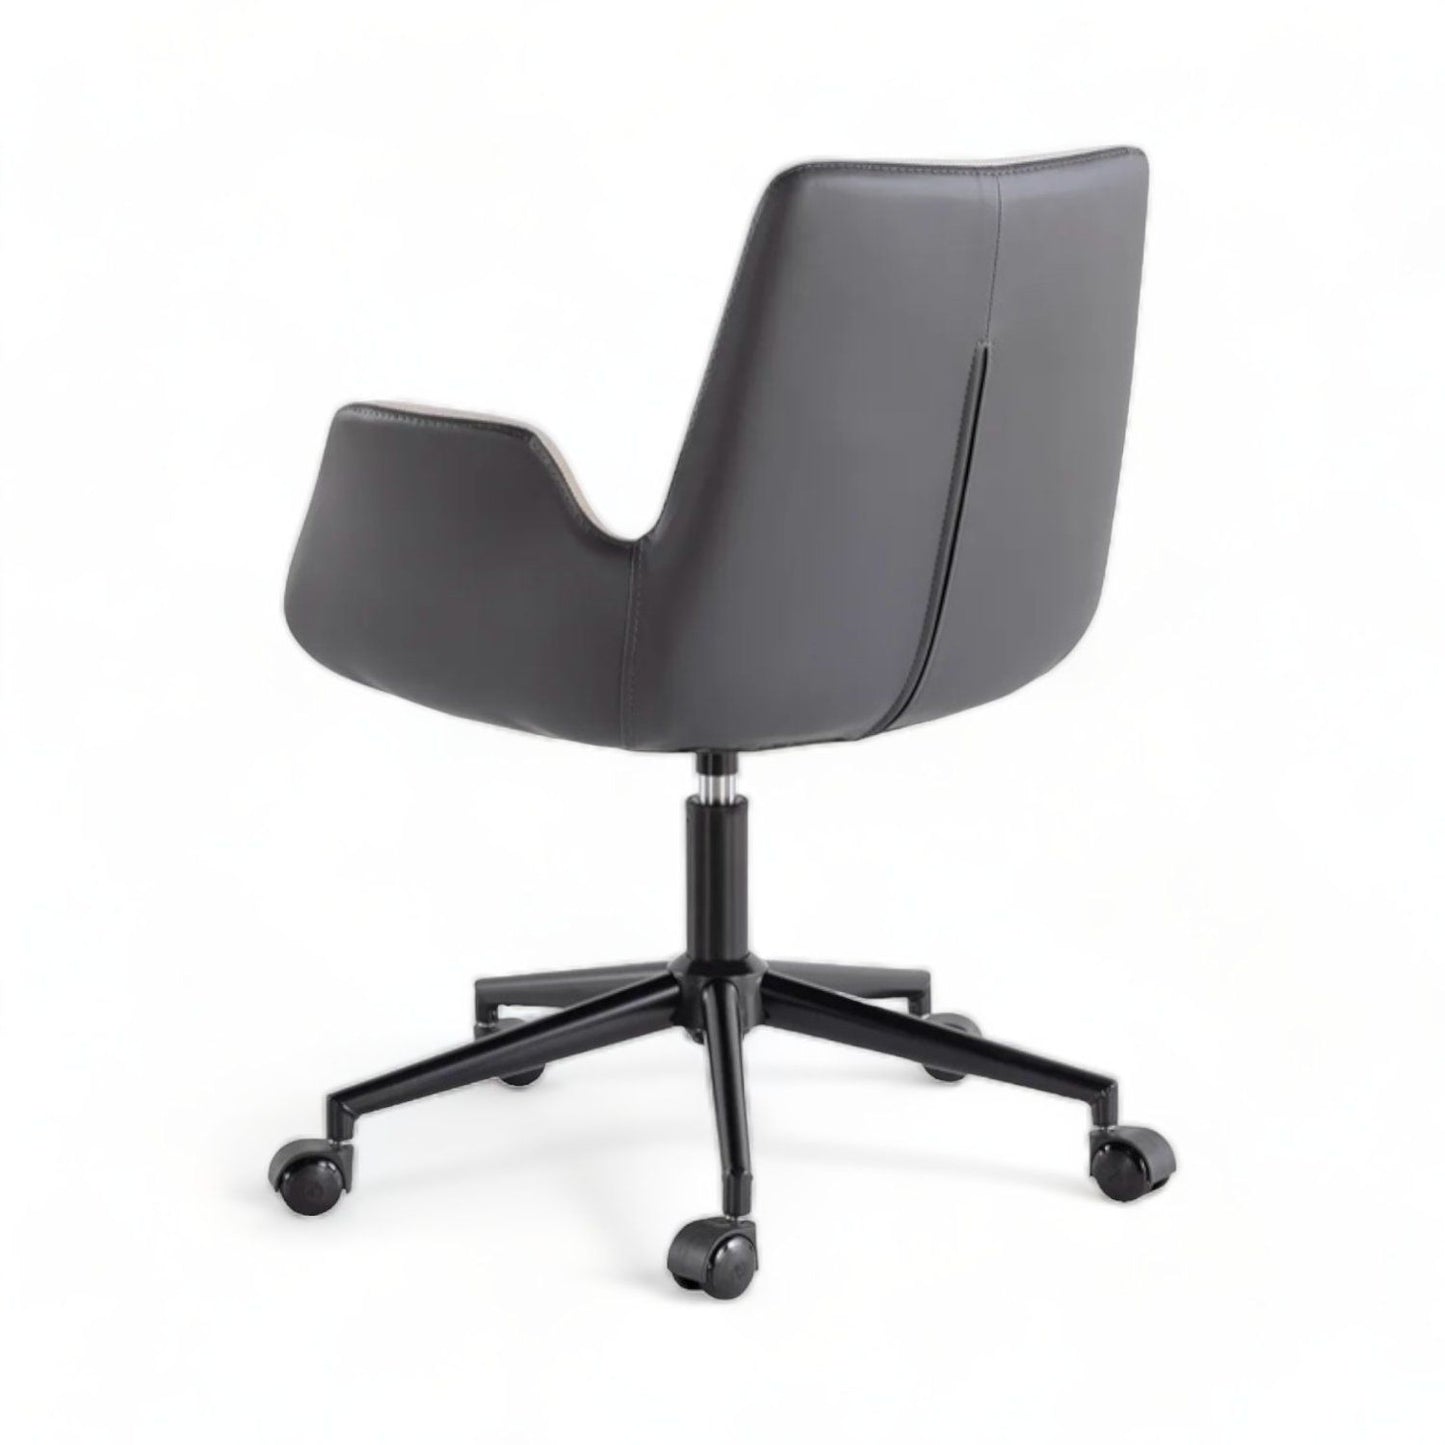 Dora - Cream, Anthracite - Office Chair